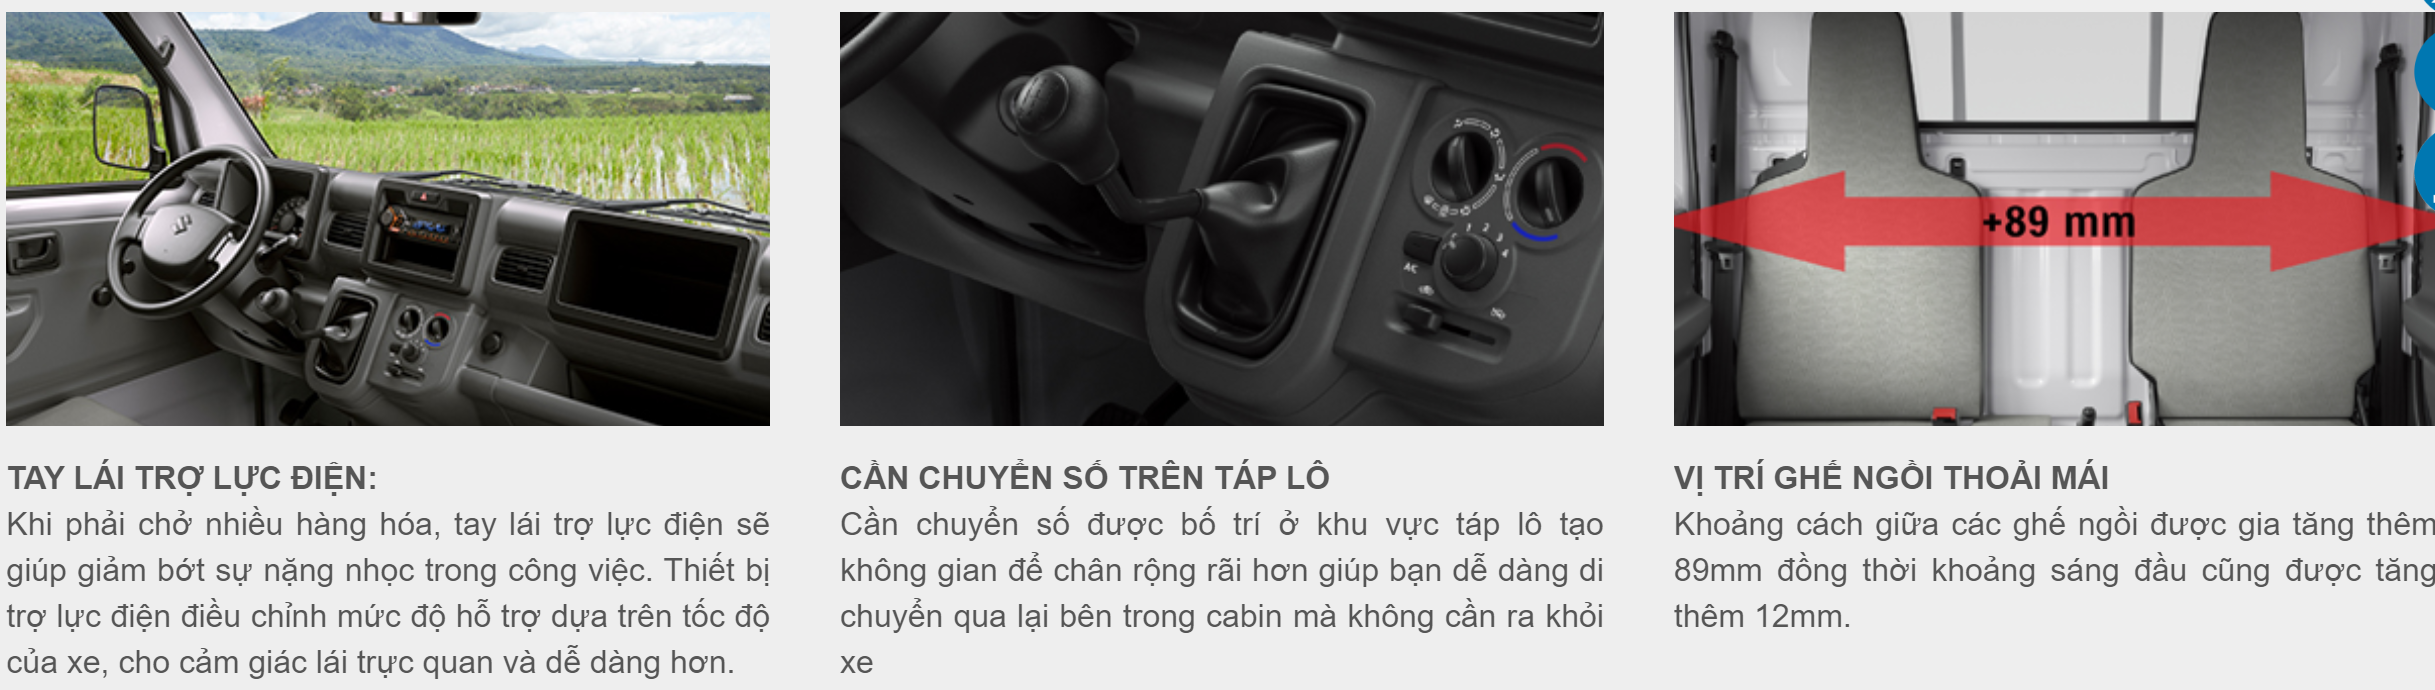 Một số ưu điểm về tay lái, cần chuyển số và vị trí ghế ngồi của xe tải nhẹ Carry Pro